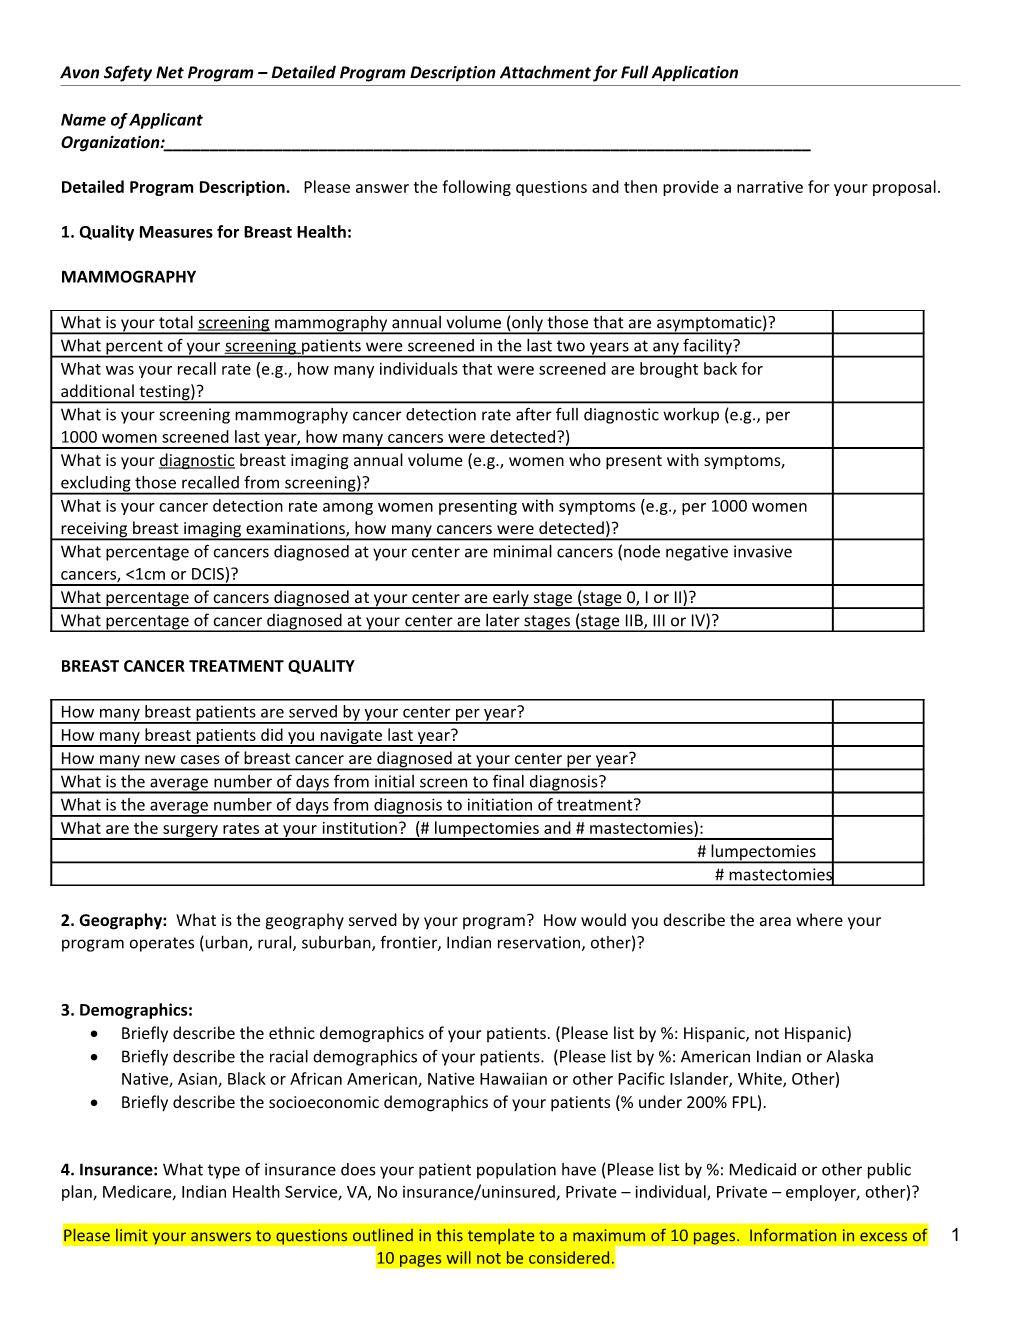 Avon Safety Net Program Detailed Program Description Attachment for Full Application